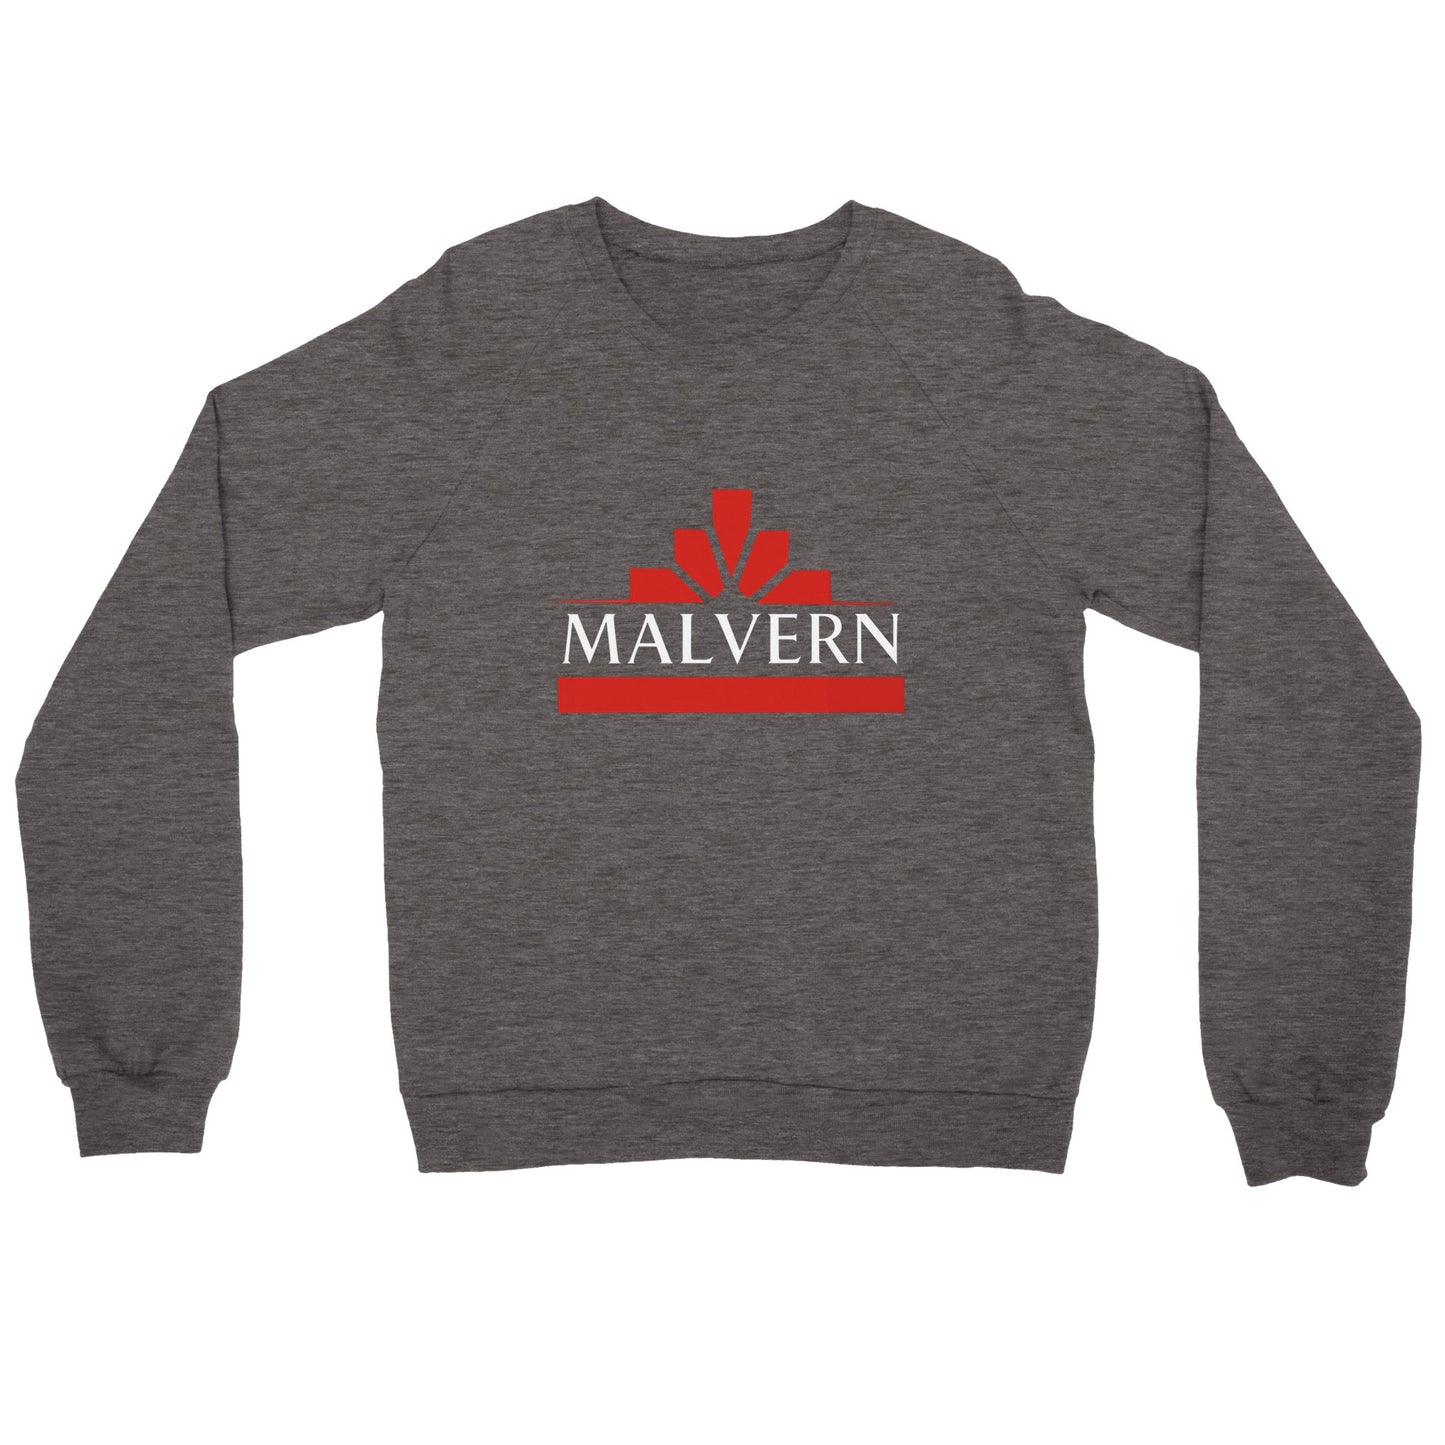 "Retro Malvern TC" Premium Unisex Crewneck Sweatshirt